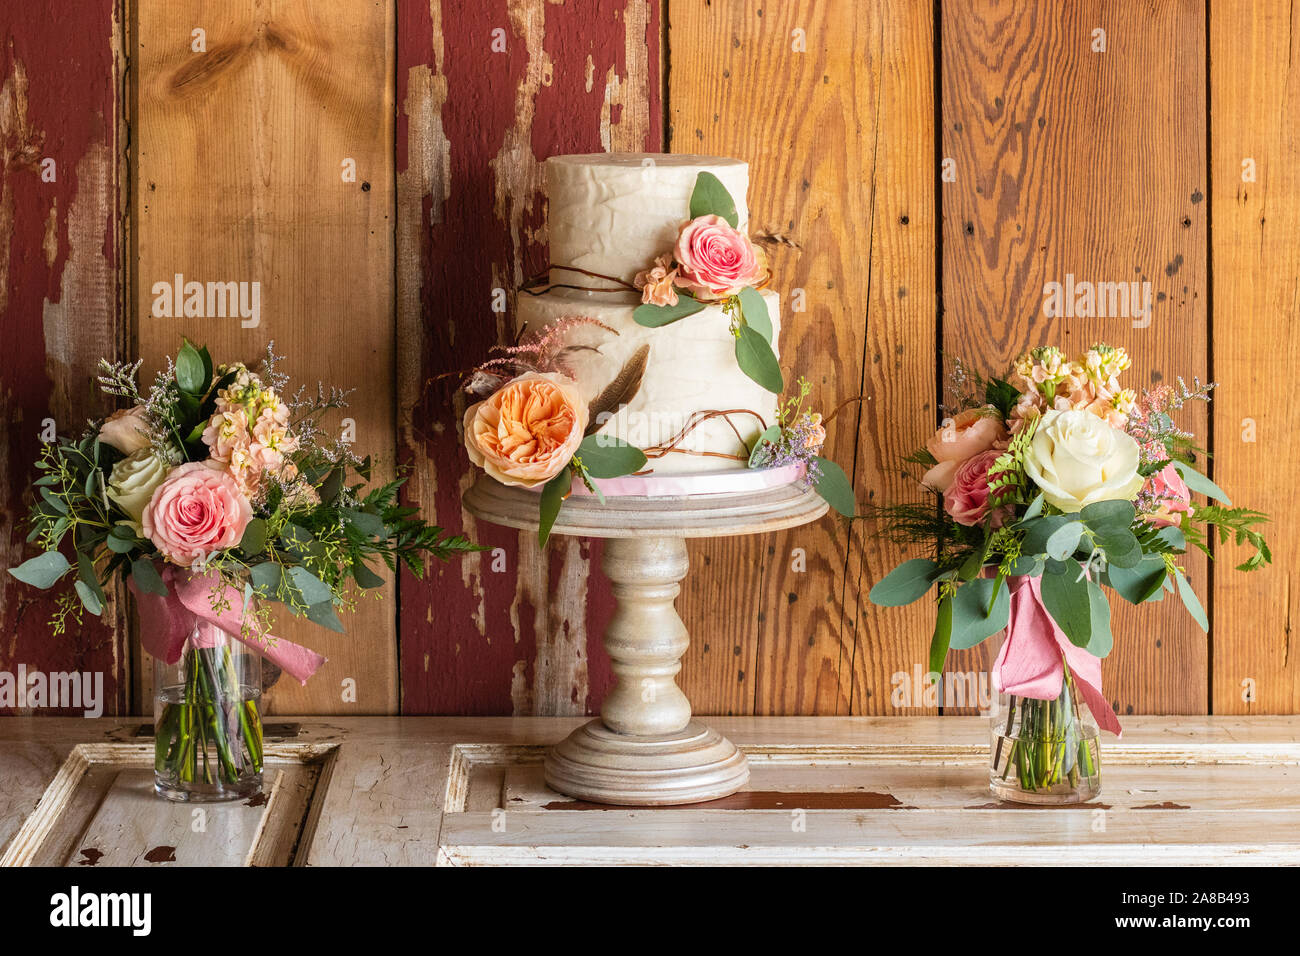 Un gâteau de mariage rustique sur un stand avec des fleurs et des bâtons rétractable le gâteau. Le gâteau se trouve au sommet d'une porte avec du bois grange derrière. Des vases de fleurs sont Banque D'Images